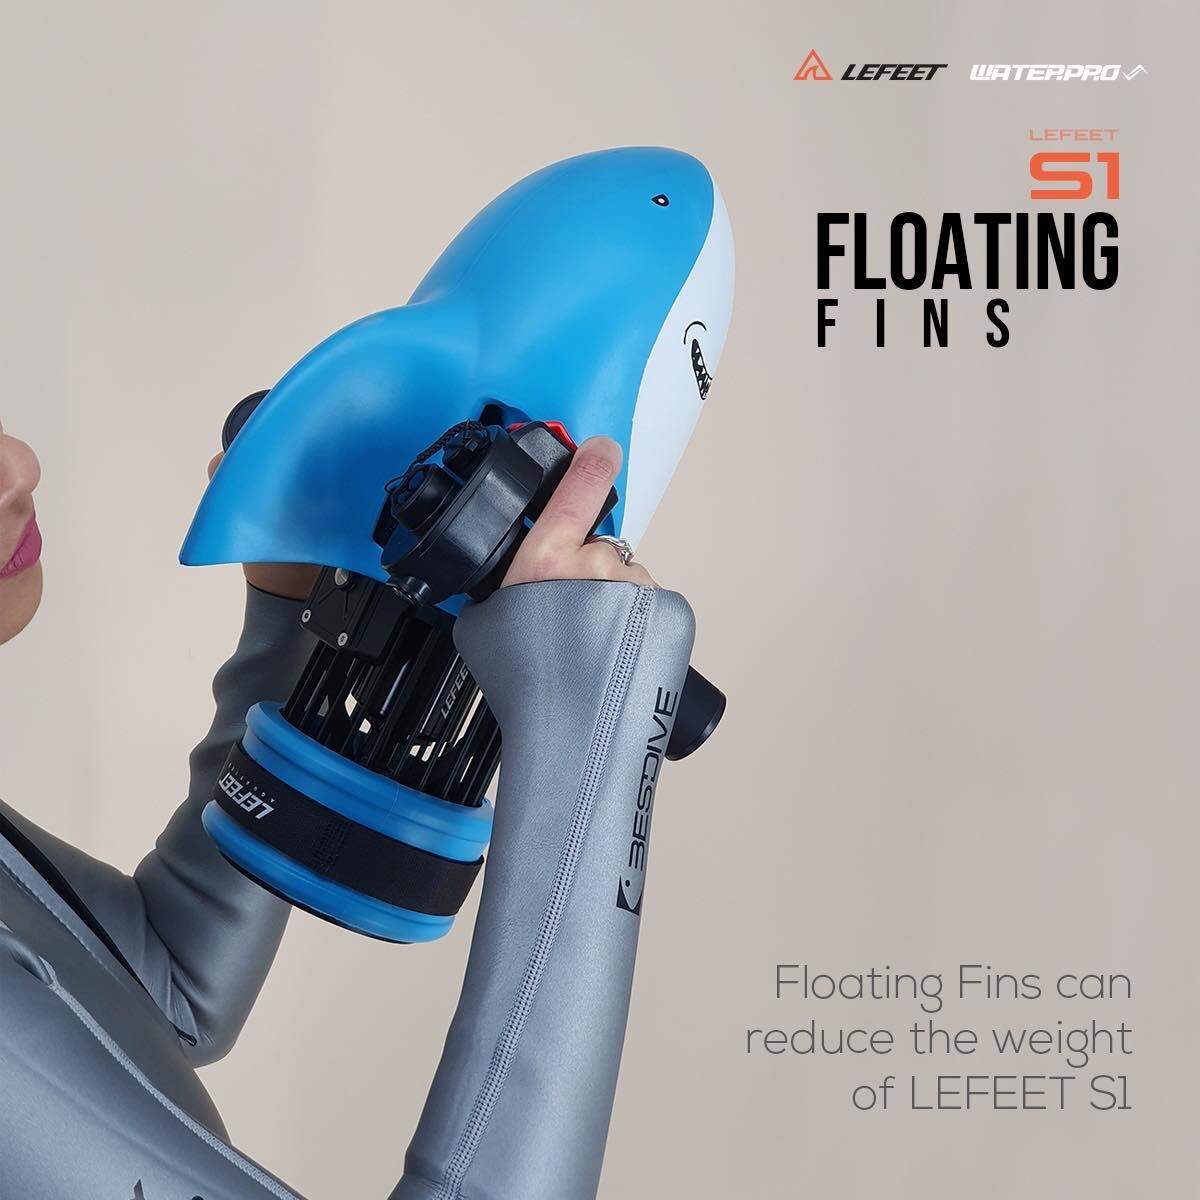 LEFEET Floating Fins